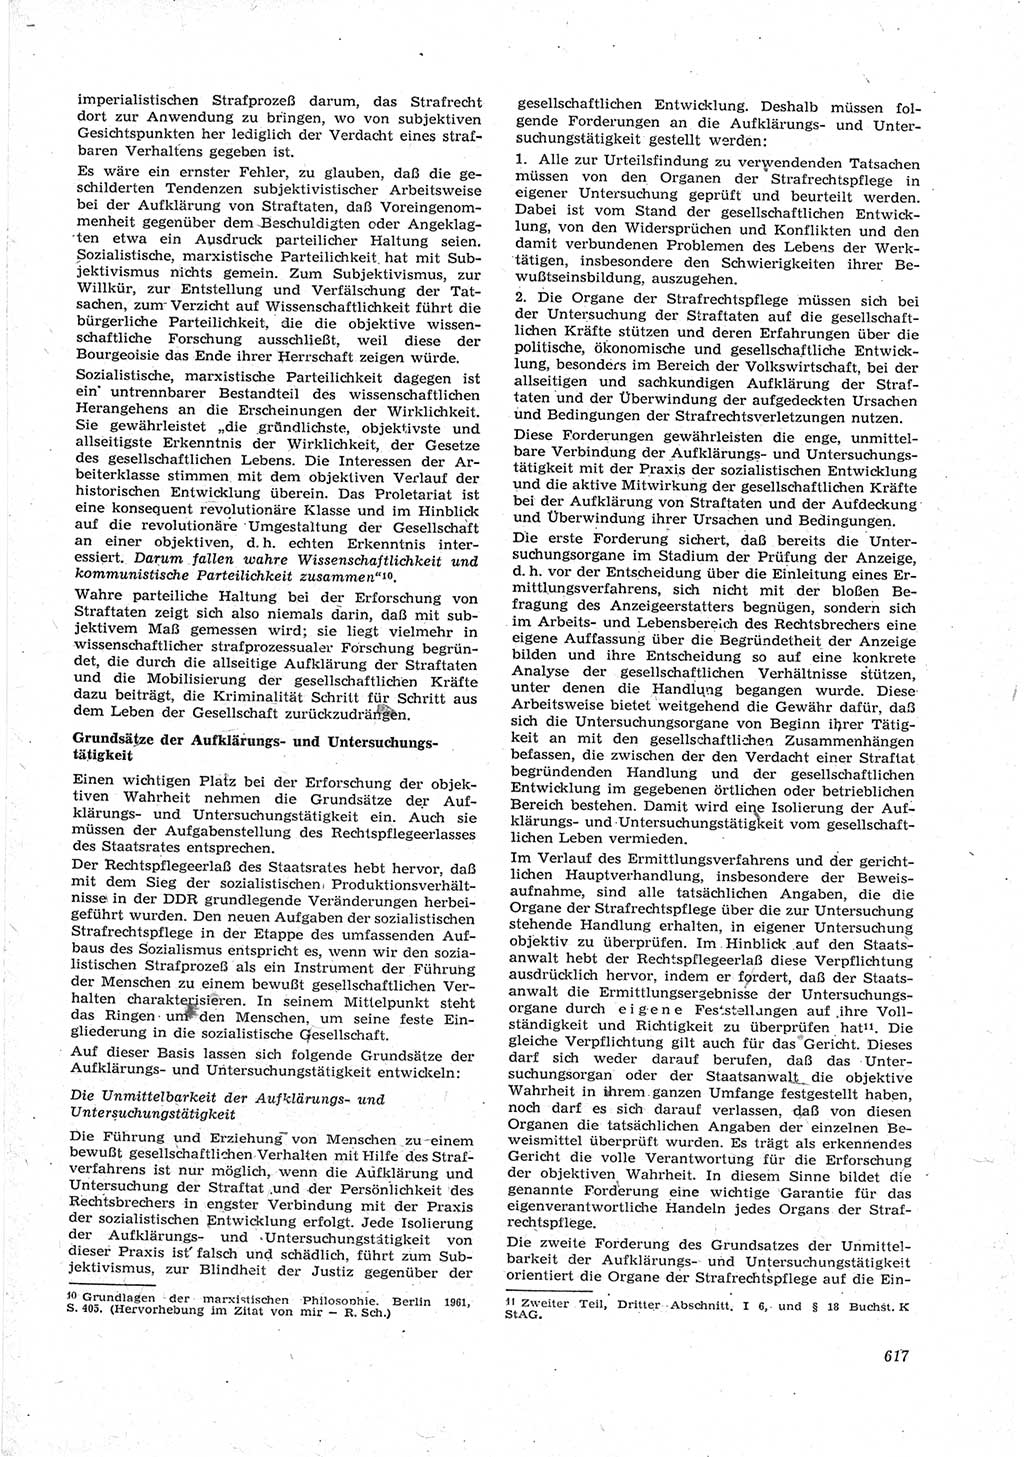 Neue Justiz (NJ), Zeitschrift für Recht und Rechtswissenschaft [Deutsche Demokratische Republik (DDR)], 17. Jahrgang 1963, Seite 617 (NJ DDR 1963, S. 617)